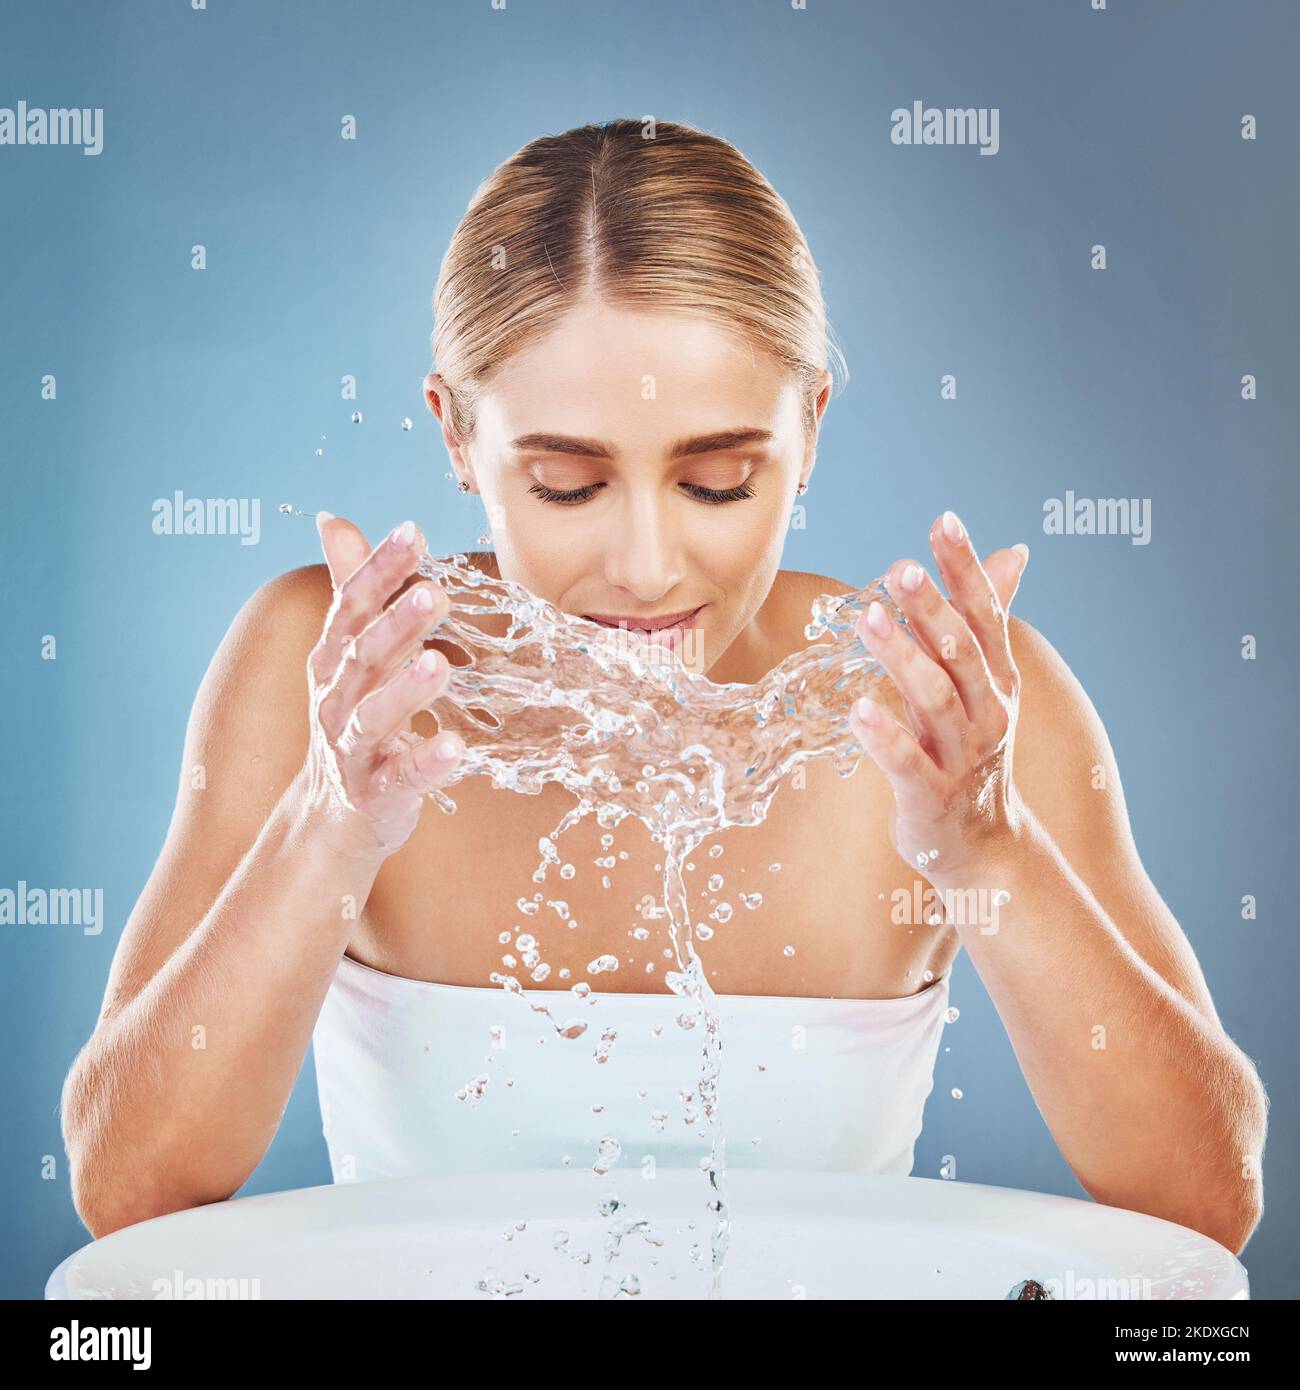 Gesicht, Wasser und Reinigung mit einer Model-Frau im Studio auf blauem Hintergrund, um ihre Haut im Waschbecken zu waschen. Spritzen, Hautpflege und Hände mit einem Stockfoto